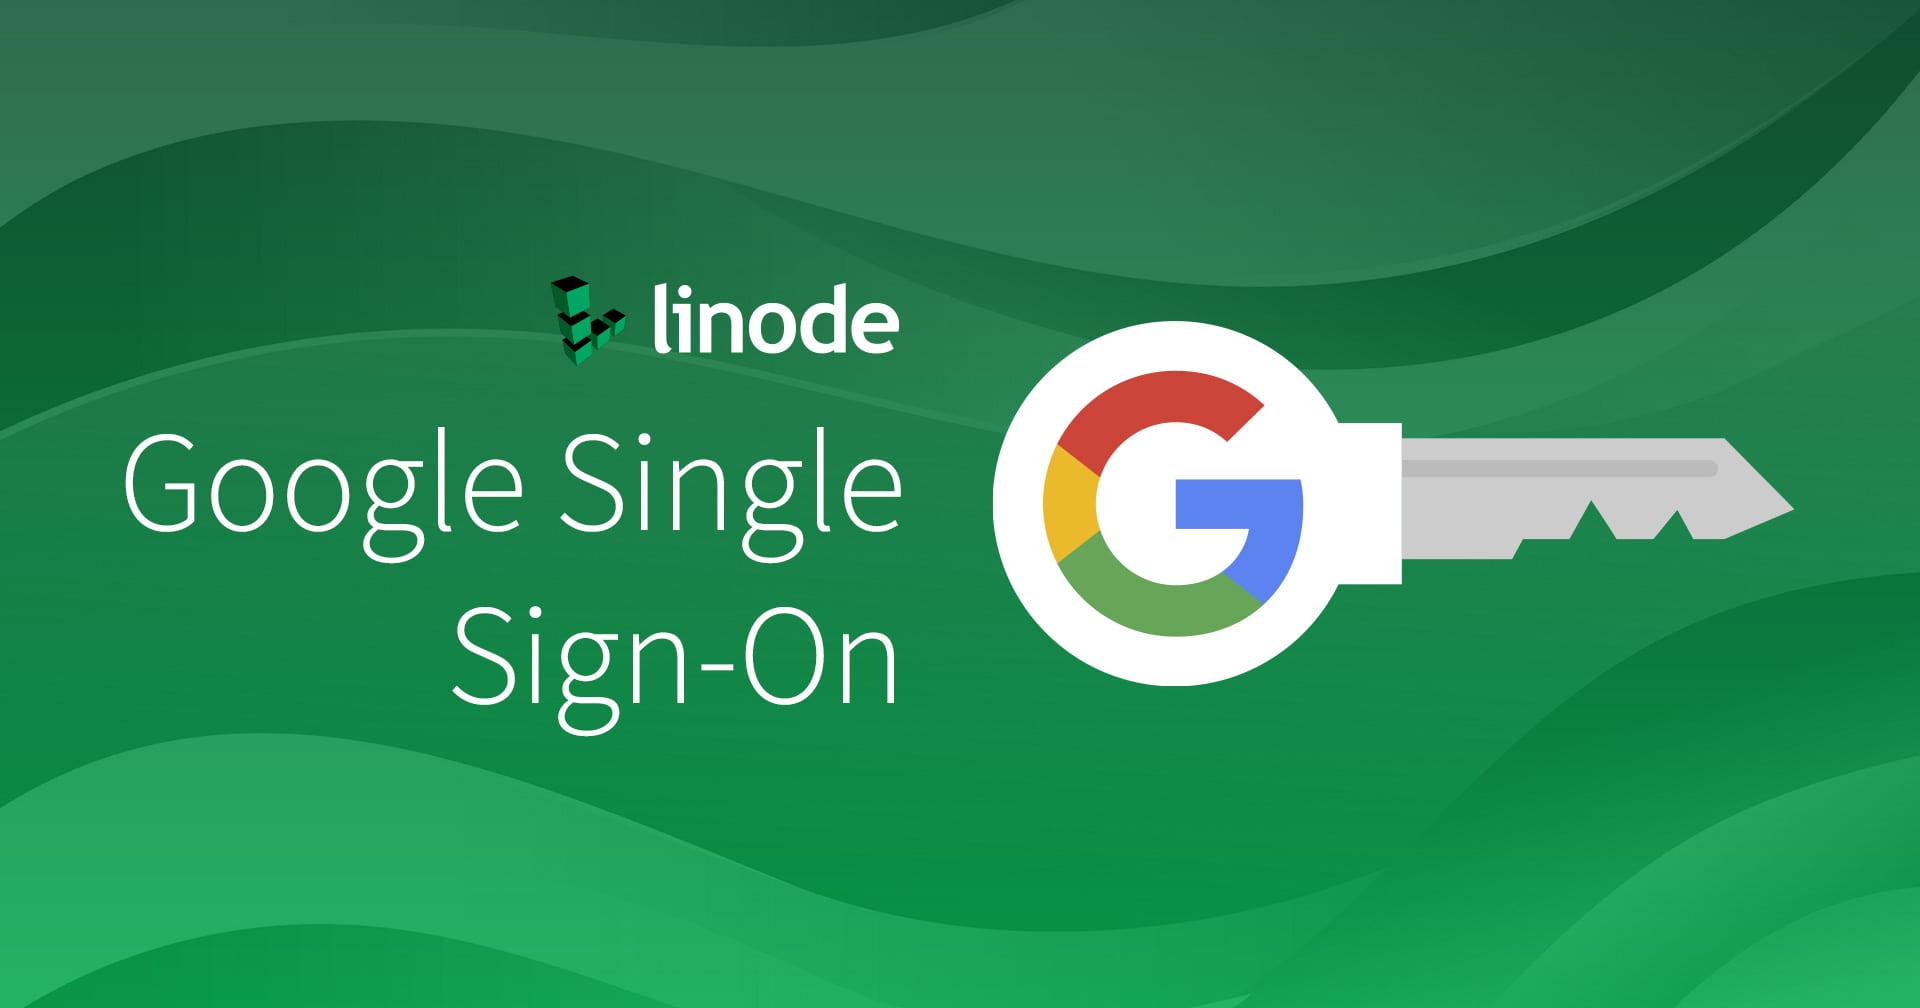 Linode-Google-Single-Sign-On (シングルサインオン)